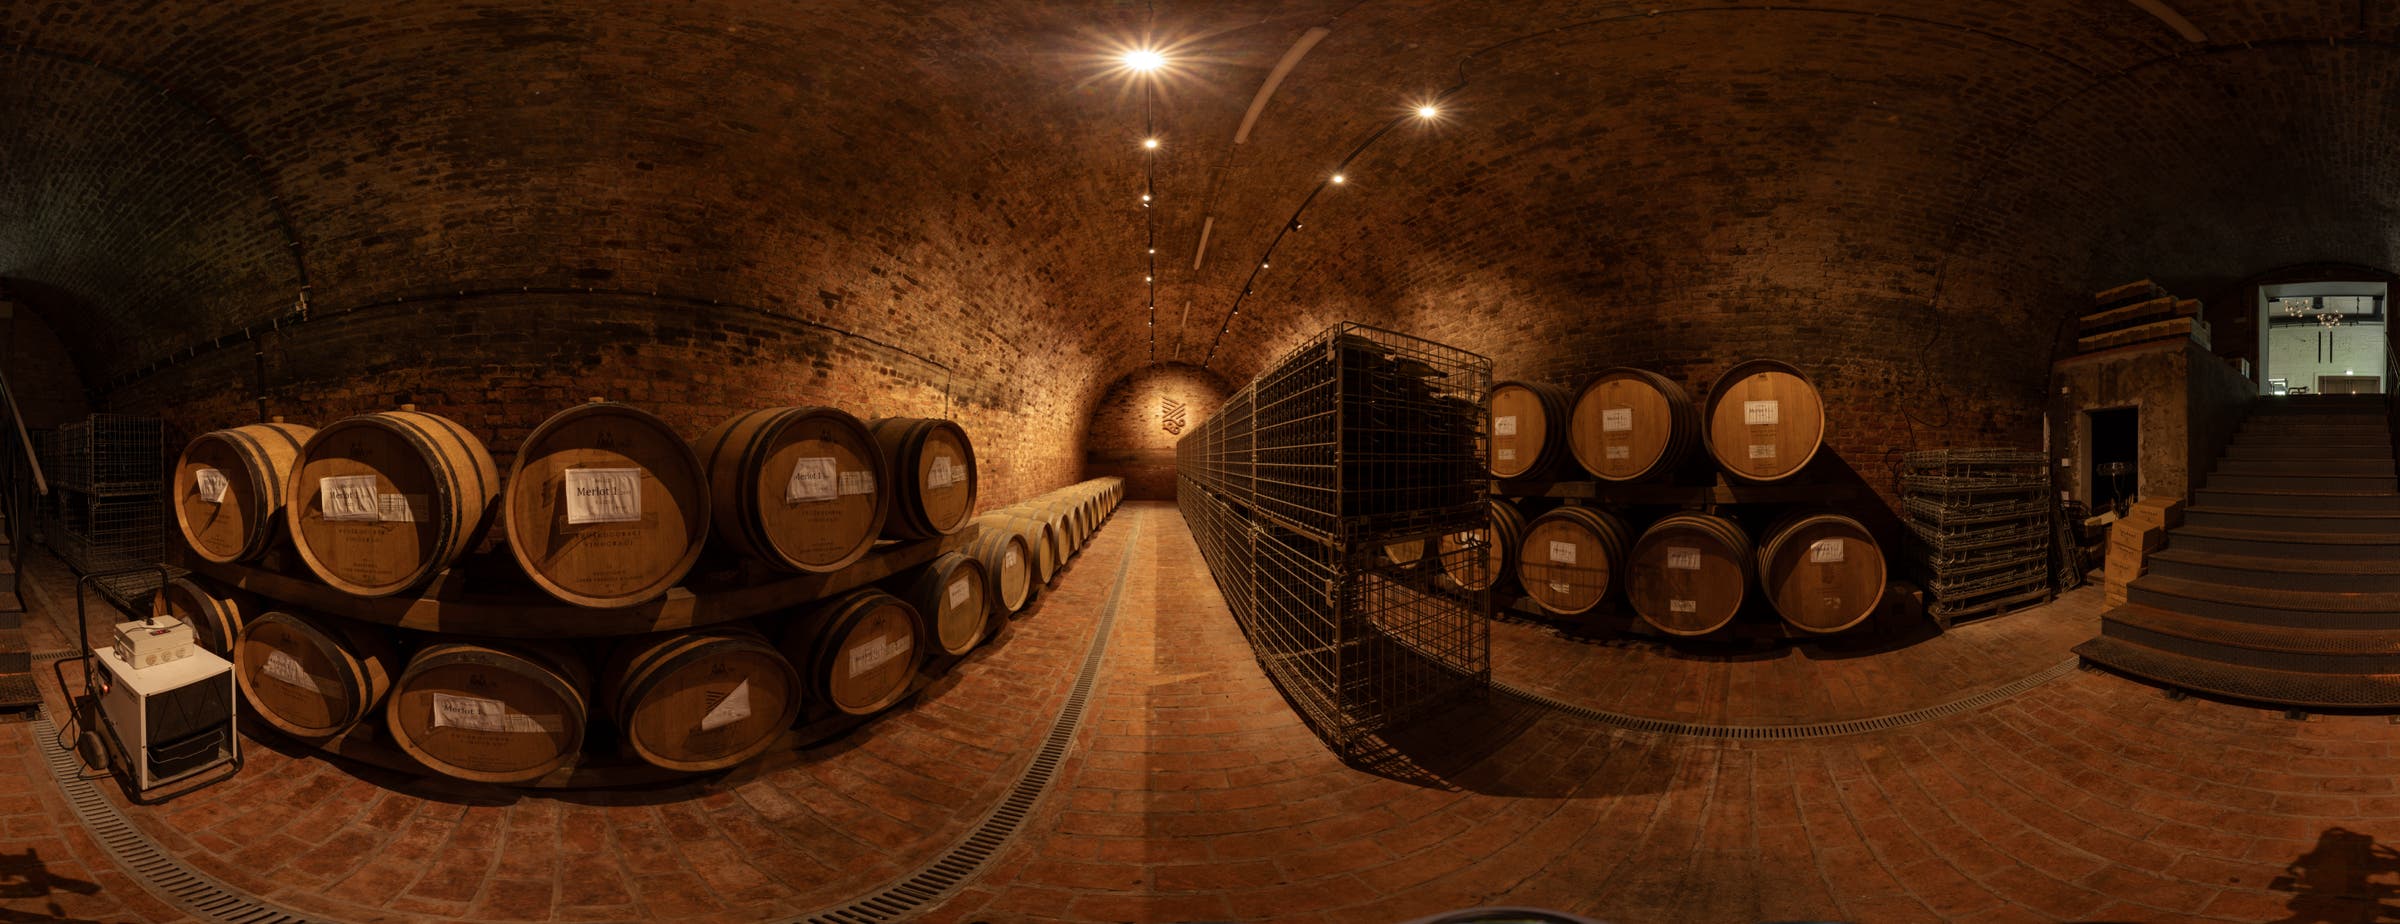 Slika prikazuje 360-stopinjski pogled na vinsko klet, ki se uporablja za shranjevanje sodov ob stenah. Na sredini dvorane so vzdolž hodnika nameščeni kovinski zaboji za shranjevanje steklenih steklenic vina.